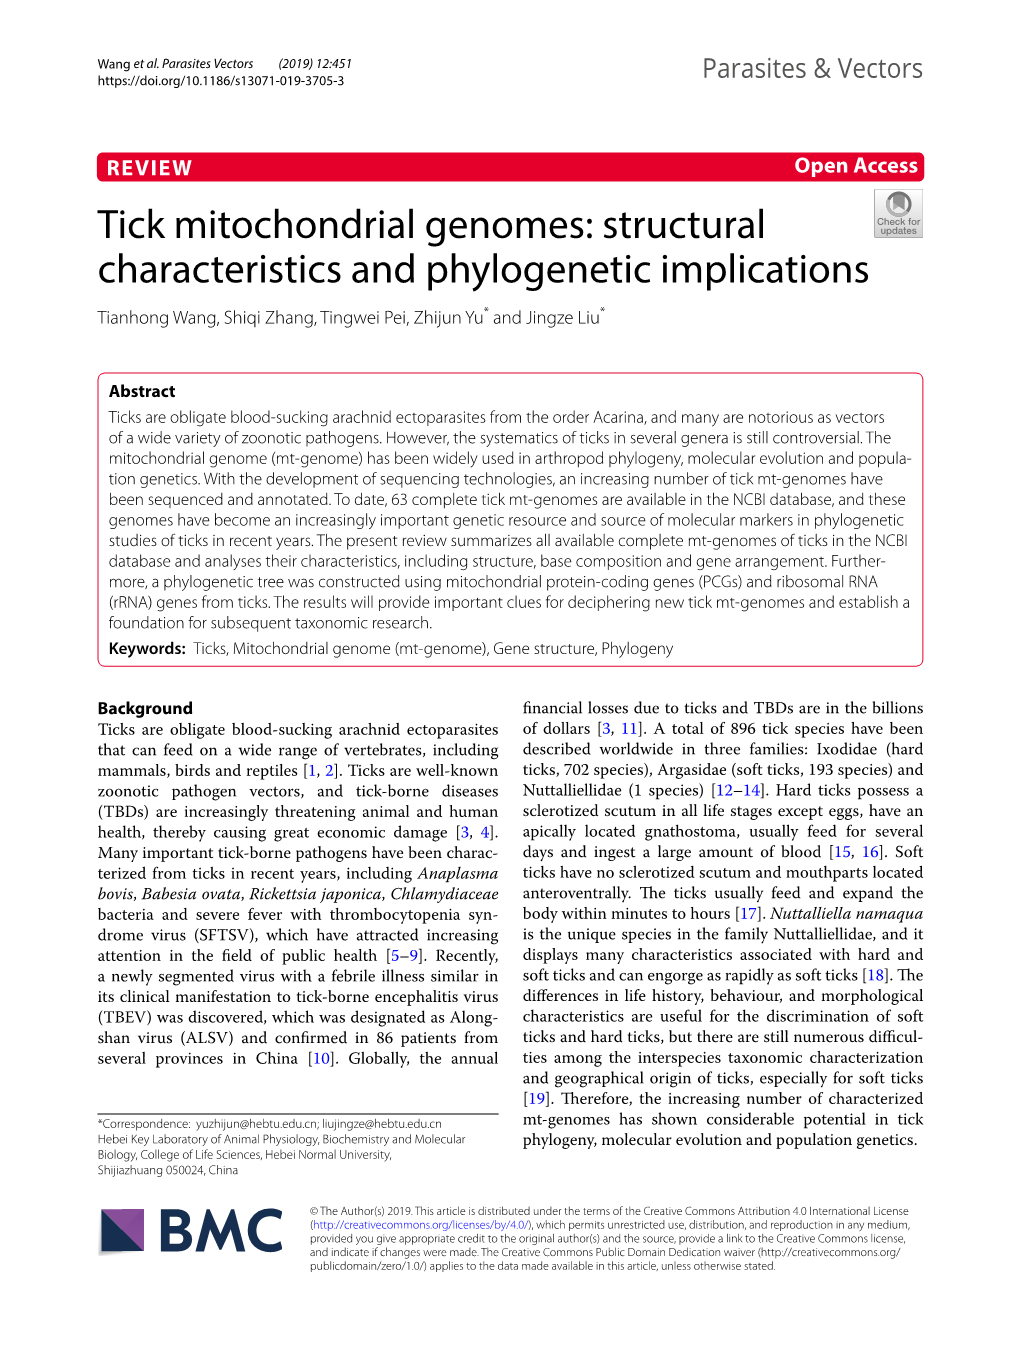 Tick Mitochondrial Genomes: Structural Characteristics and Phylogenetic Implications Tianhong Wang, Shiqi Zhang, Tingwei Pei, Zhijun Yu* and Jingze Liu*